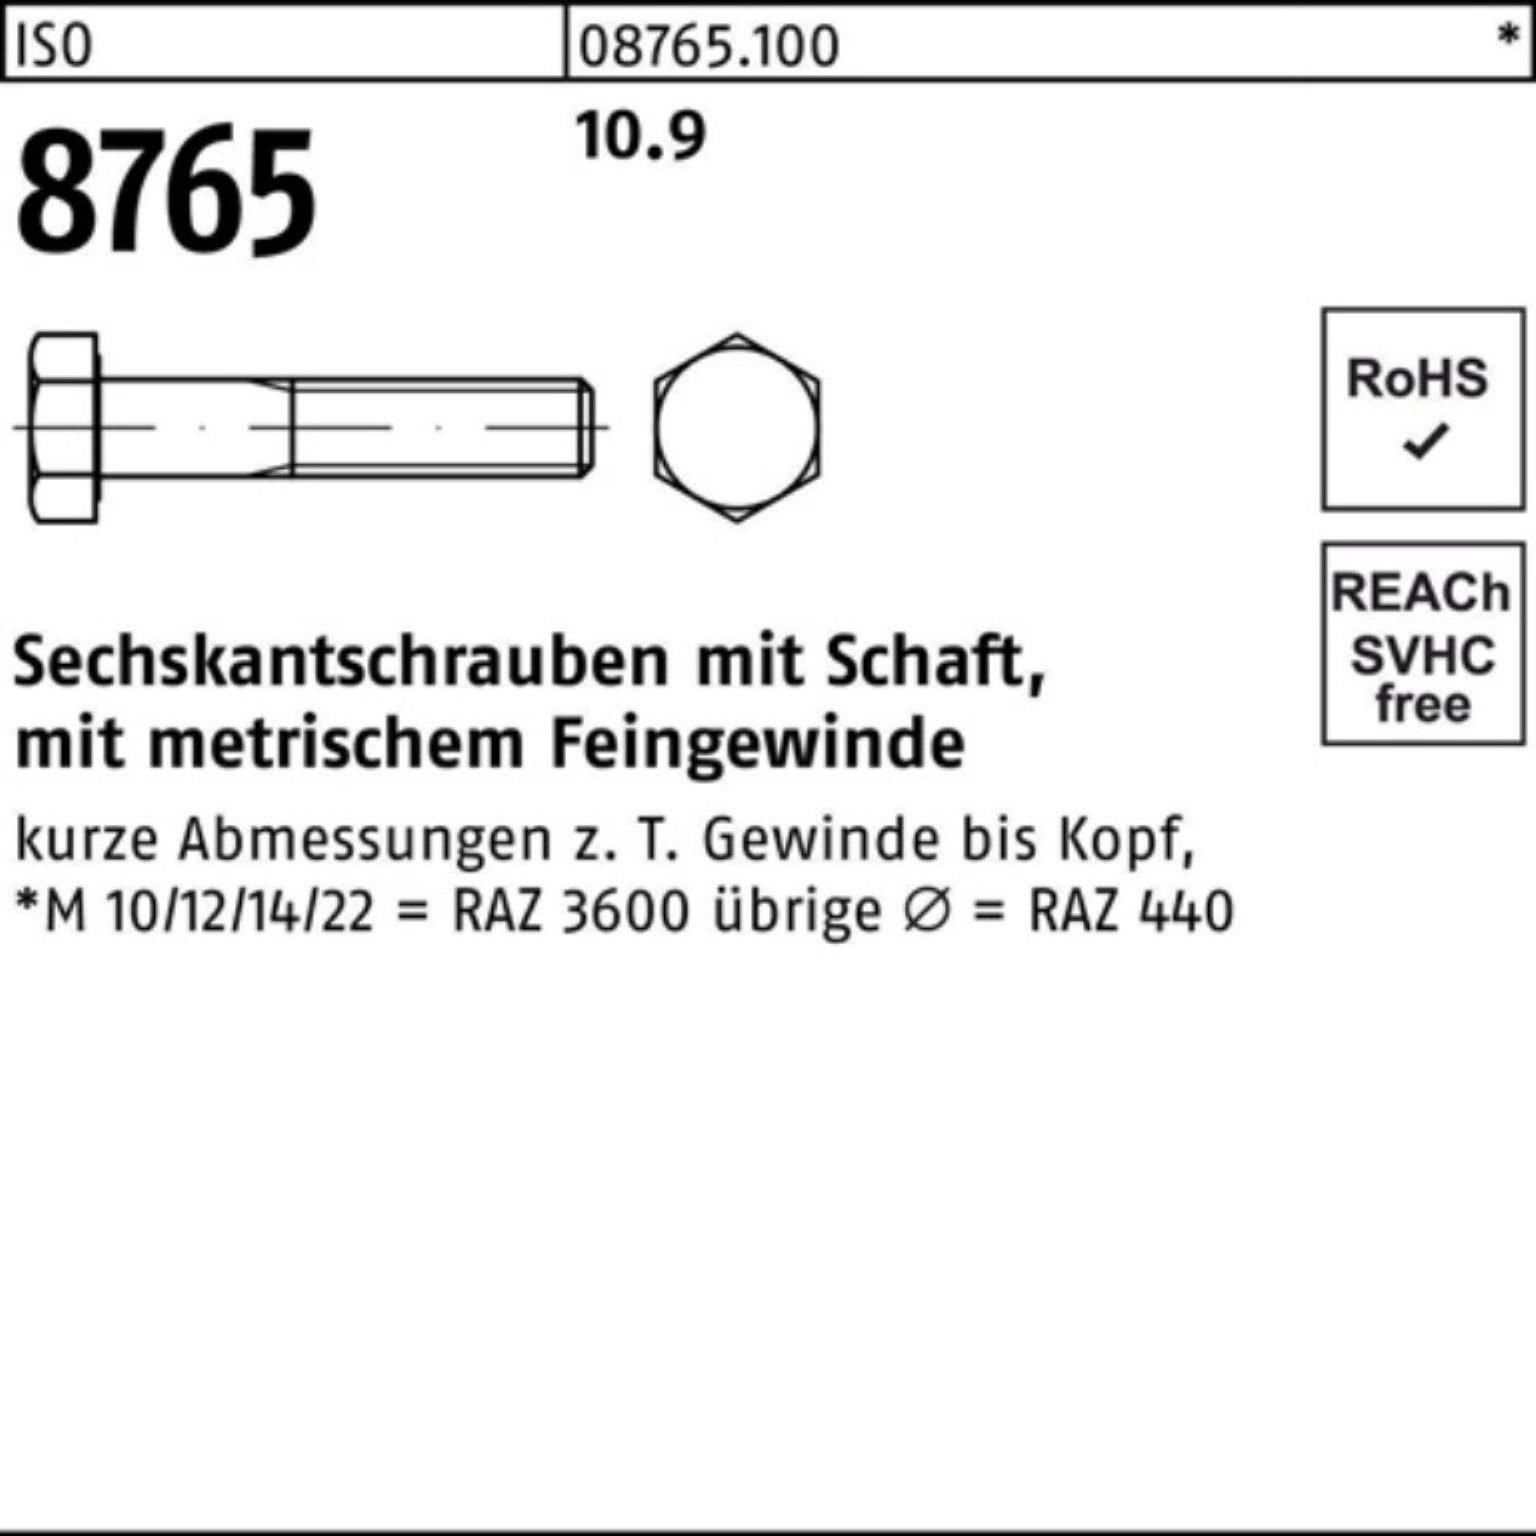 Reyher Sechskantschraube 100er M22x1,5x100 Pack Sechskantschraube 10.9 Schaft 10 8765 ISO Stüc